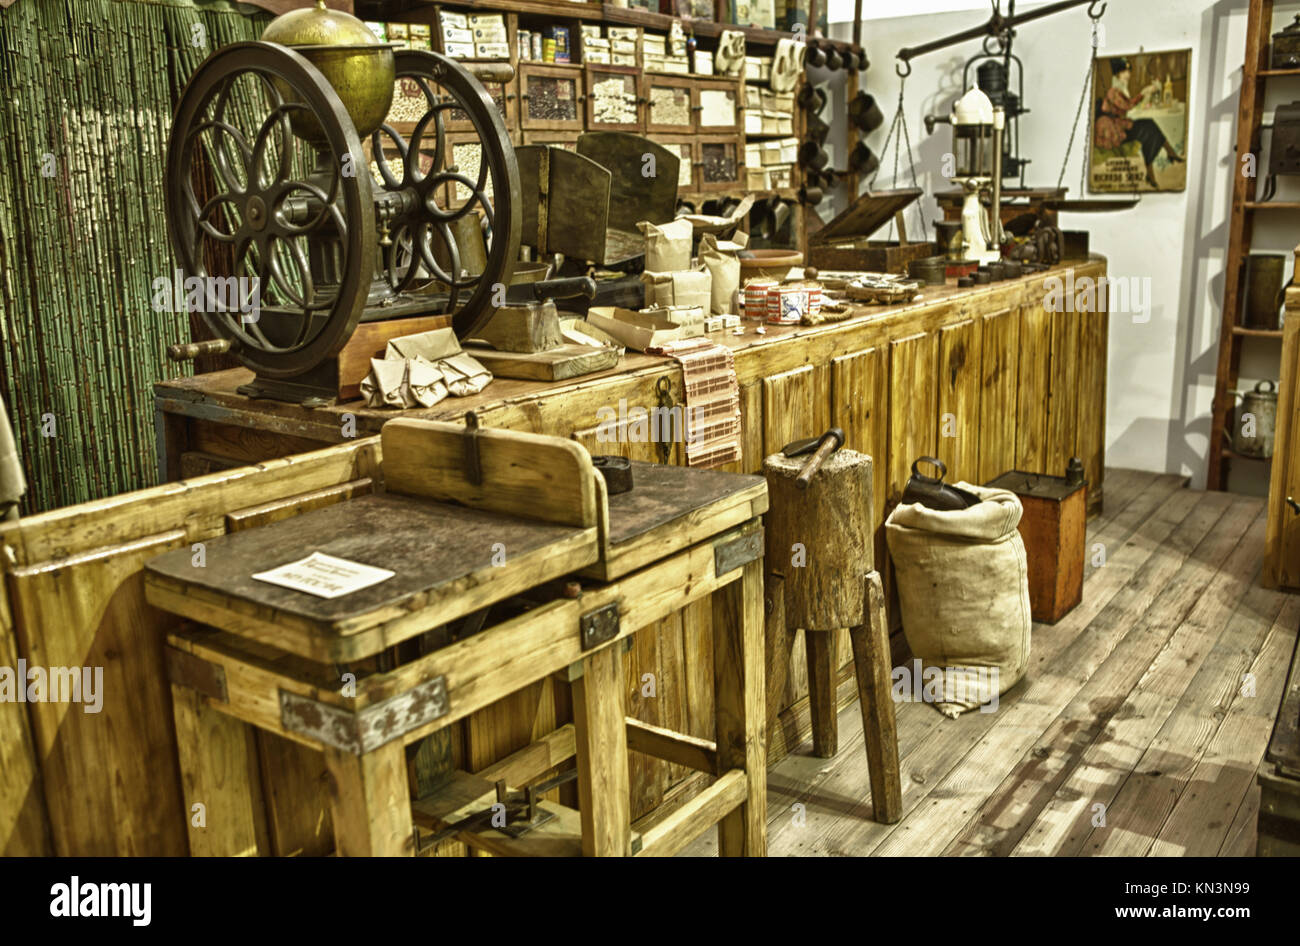 Il vecchio negozio grocerys con diversi prodotti alimentari per uso domestico e la fornitura di beni, Badajoz, Spagna. Foto Stock